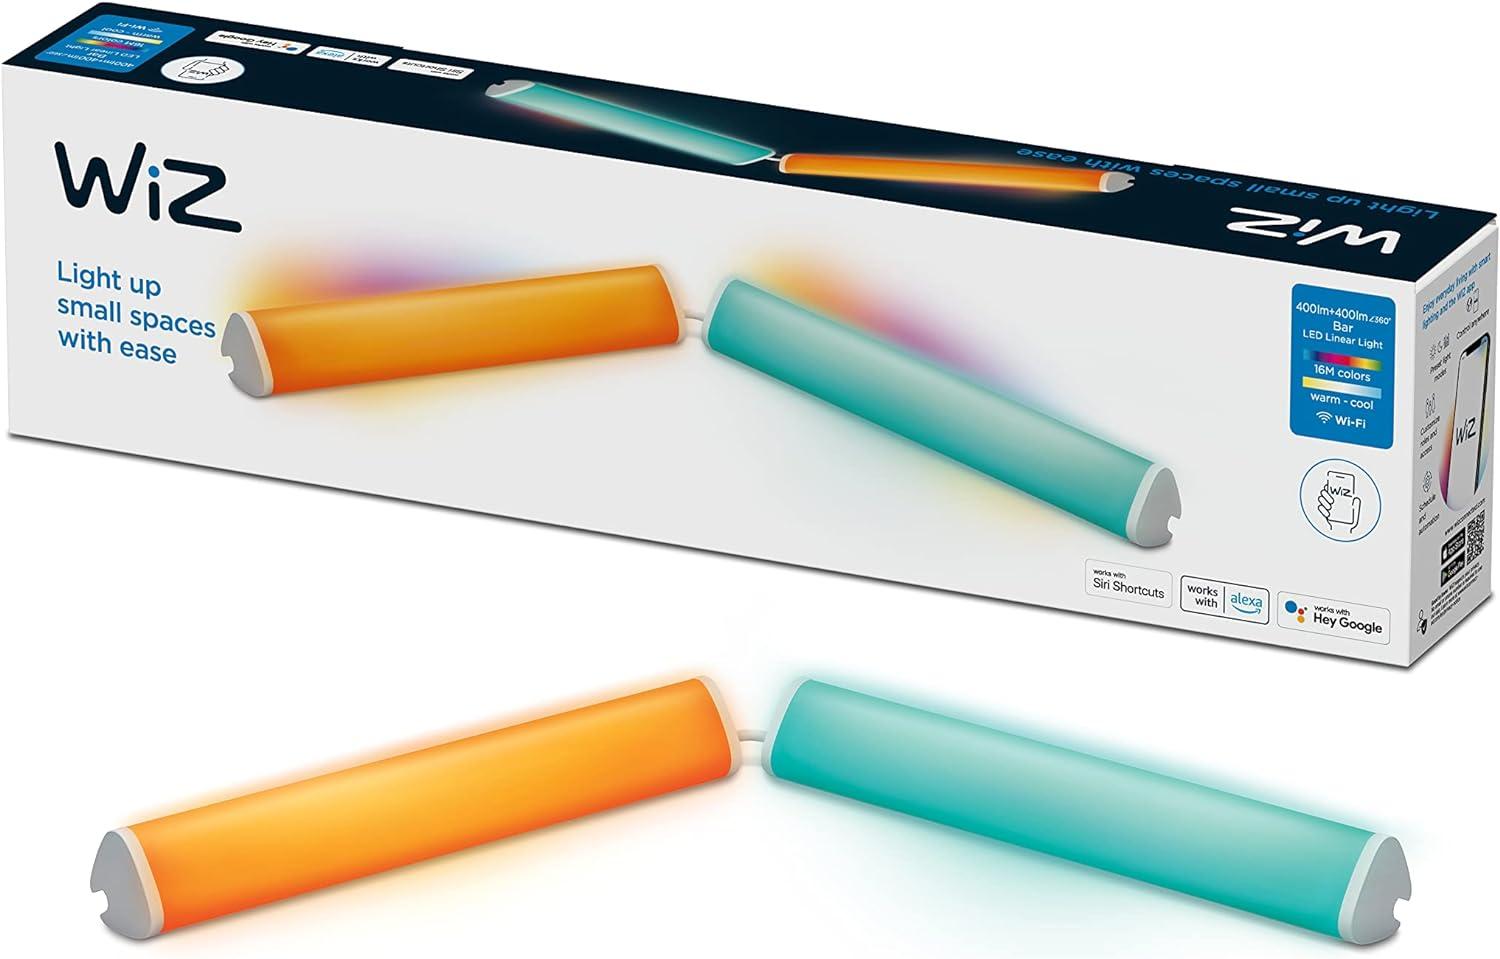 WiZ Light Bar Tischleuchte Tunable White and Color, dimmbar, 16 Mio. Farben, smarte Steuerung per App/Stimme über WLAN, Doppelpack Bild 1